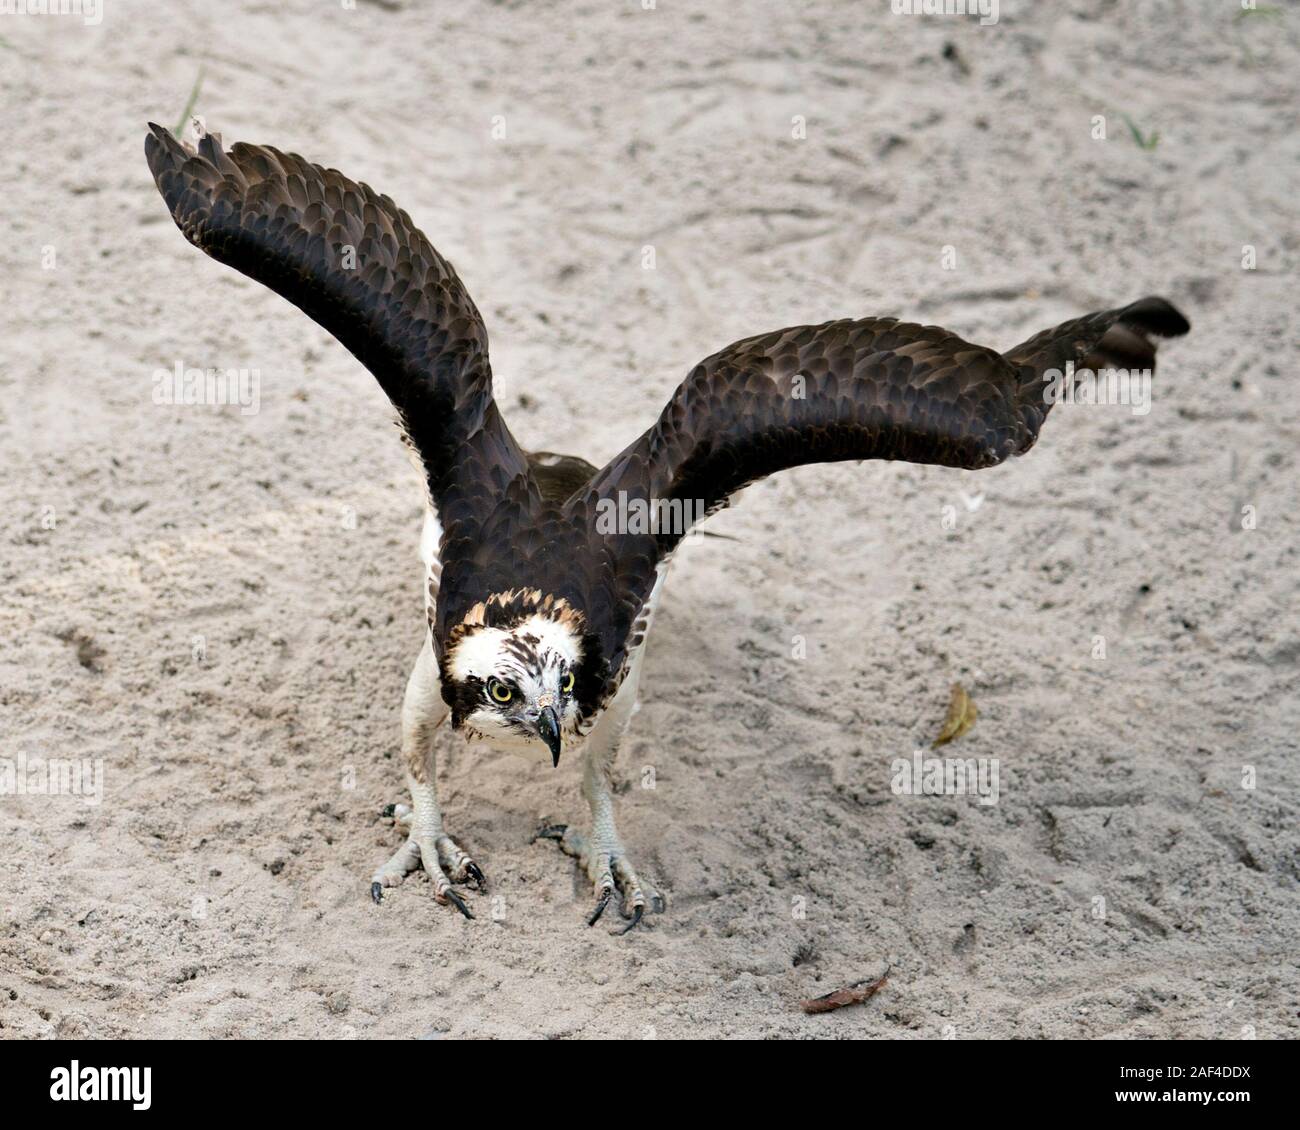 Osprey bird cerrar perfil ver alas mirando a la cámara con fondo de arena mostrando en primer plano su plumaje pardo cabeza, garras en su Foto de stock